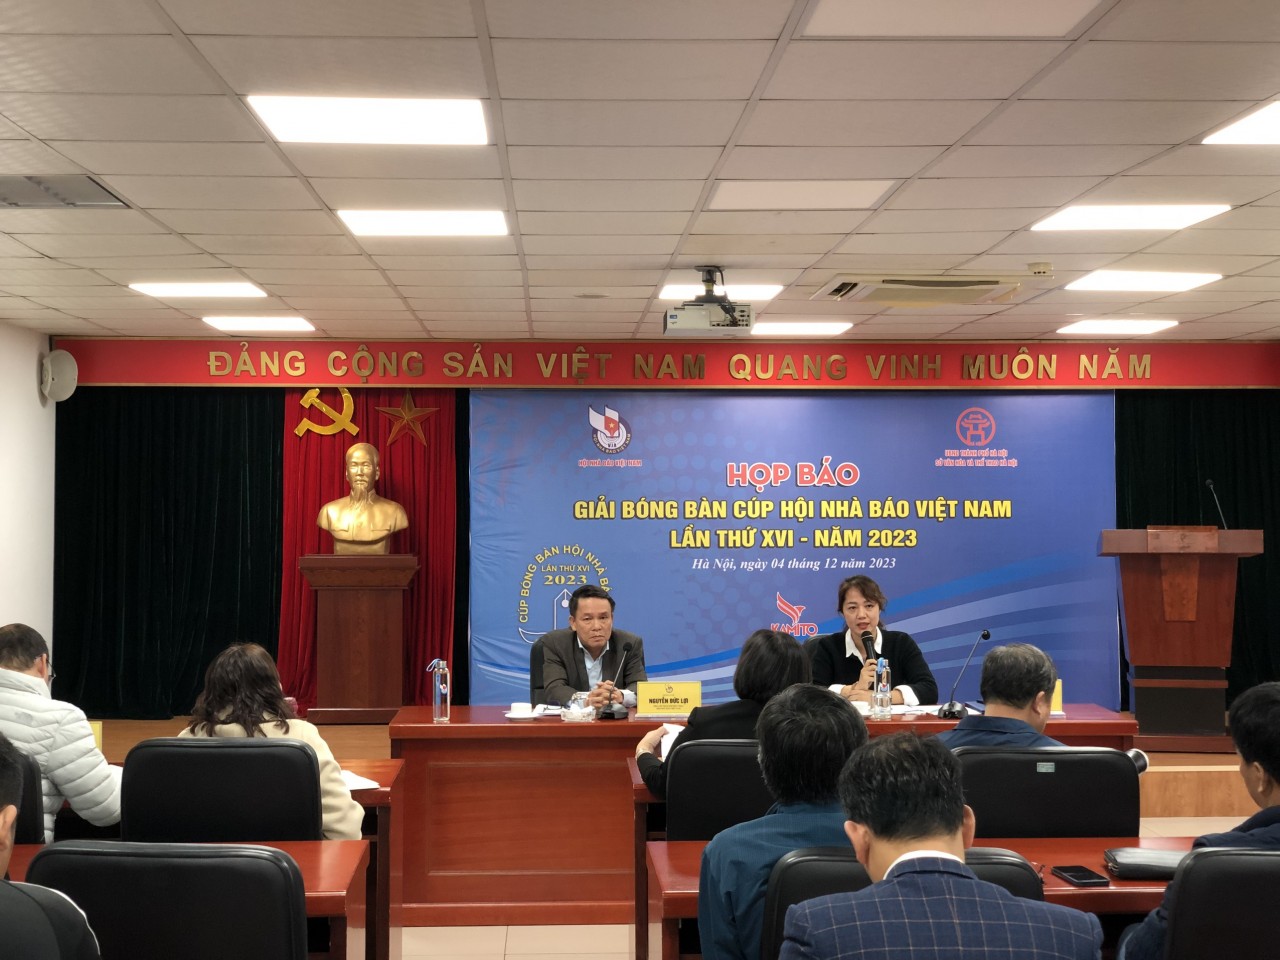 200 tay vợt tranh tài tại Giải bóng bàn Cúp Hội Nhà báo Việt Nam 2023